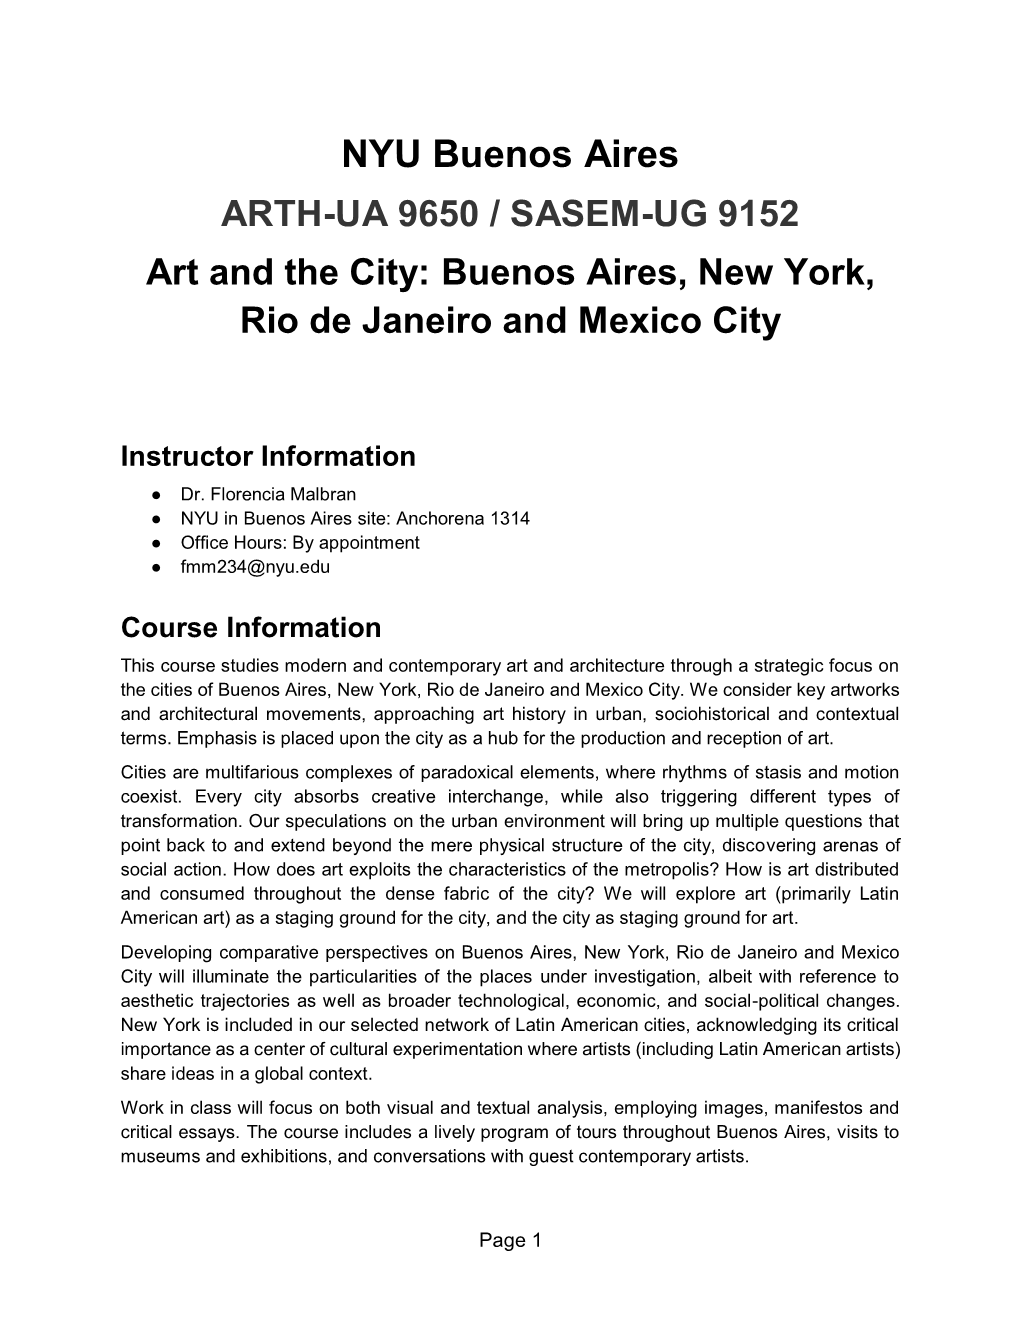 NYU Buenos Aires ARTH-UA 9650 / SASEM-UG 9152 Art and the City: Buenos Aires, New York, Rio De Janeiro and Mexico City